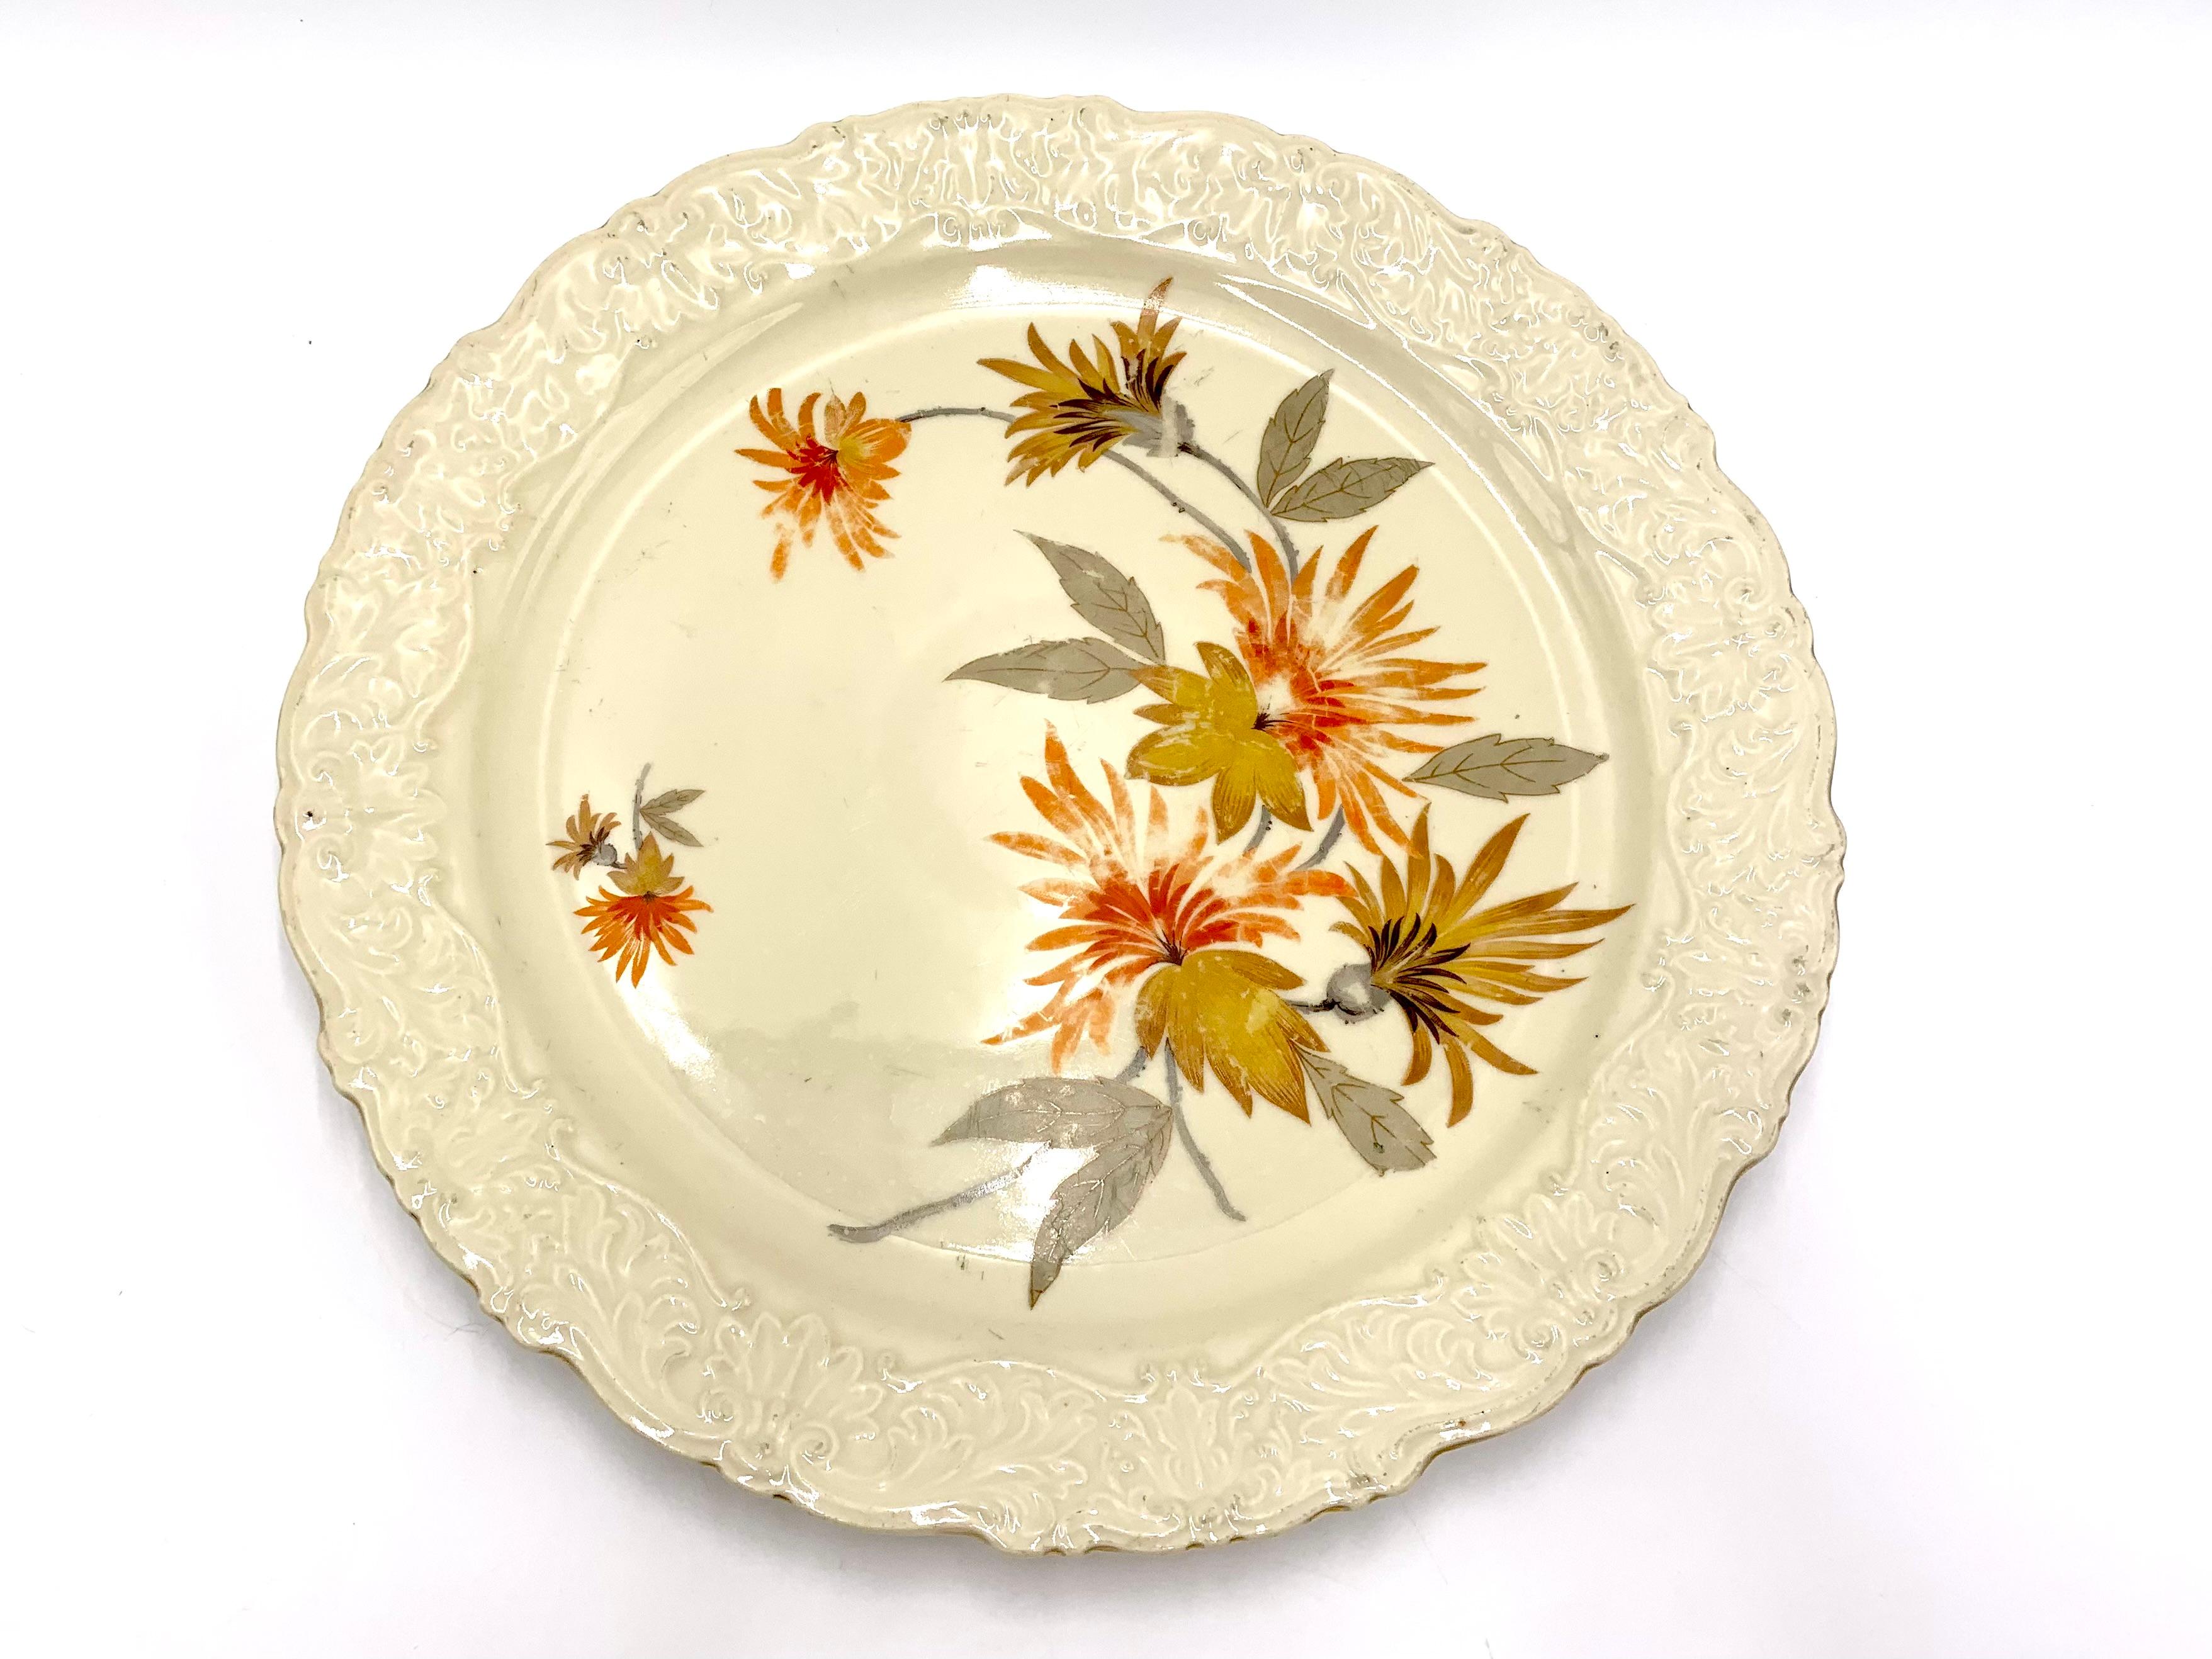 Plat en porcelaine - assiette

Signé Bavaria Schirnding

La marque a été utilisée dans les années 1909-1925.

Abrasions visibles des fleurs et de la dorure, pas de dommages.

Dimensions : hauteur 3 cm, diamètre 31 cm.